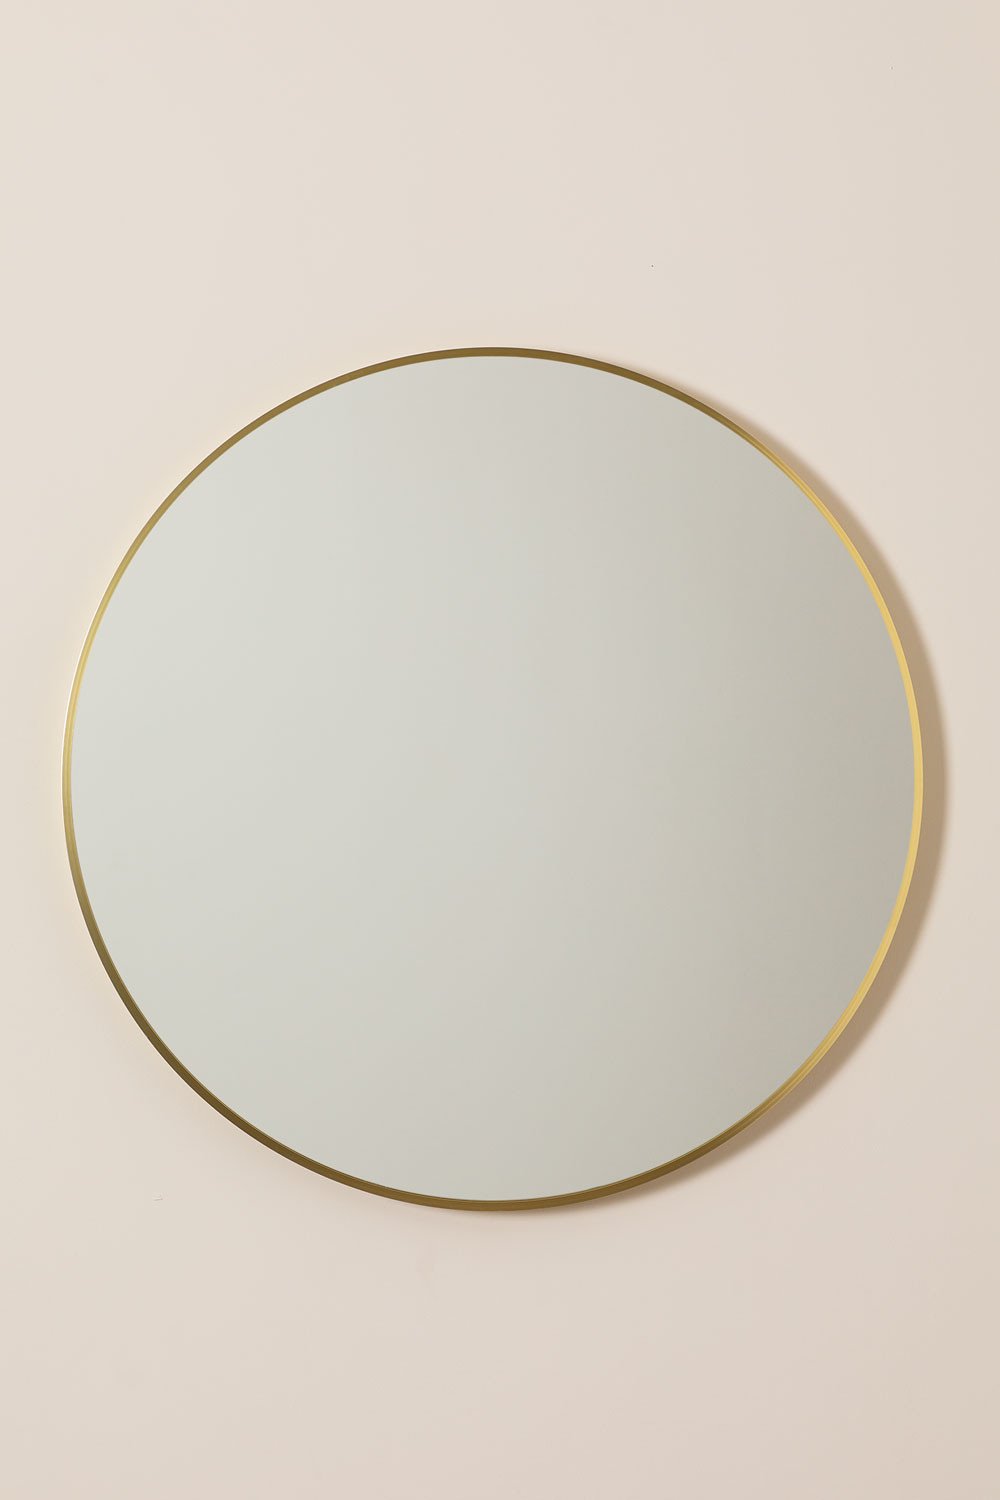 Specchio da parete rotondo in metallo Siloh Gold, immagine della galleria 2